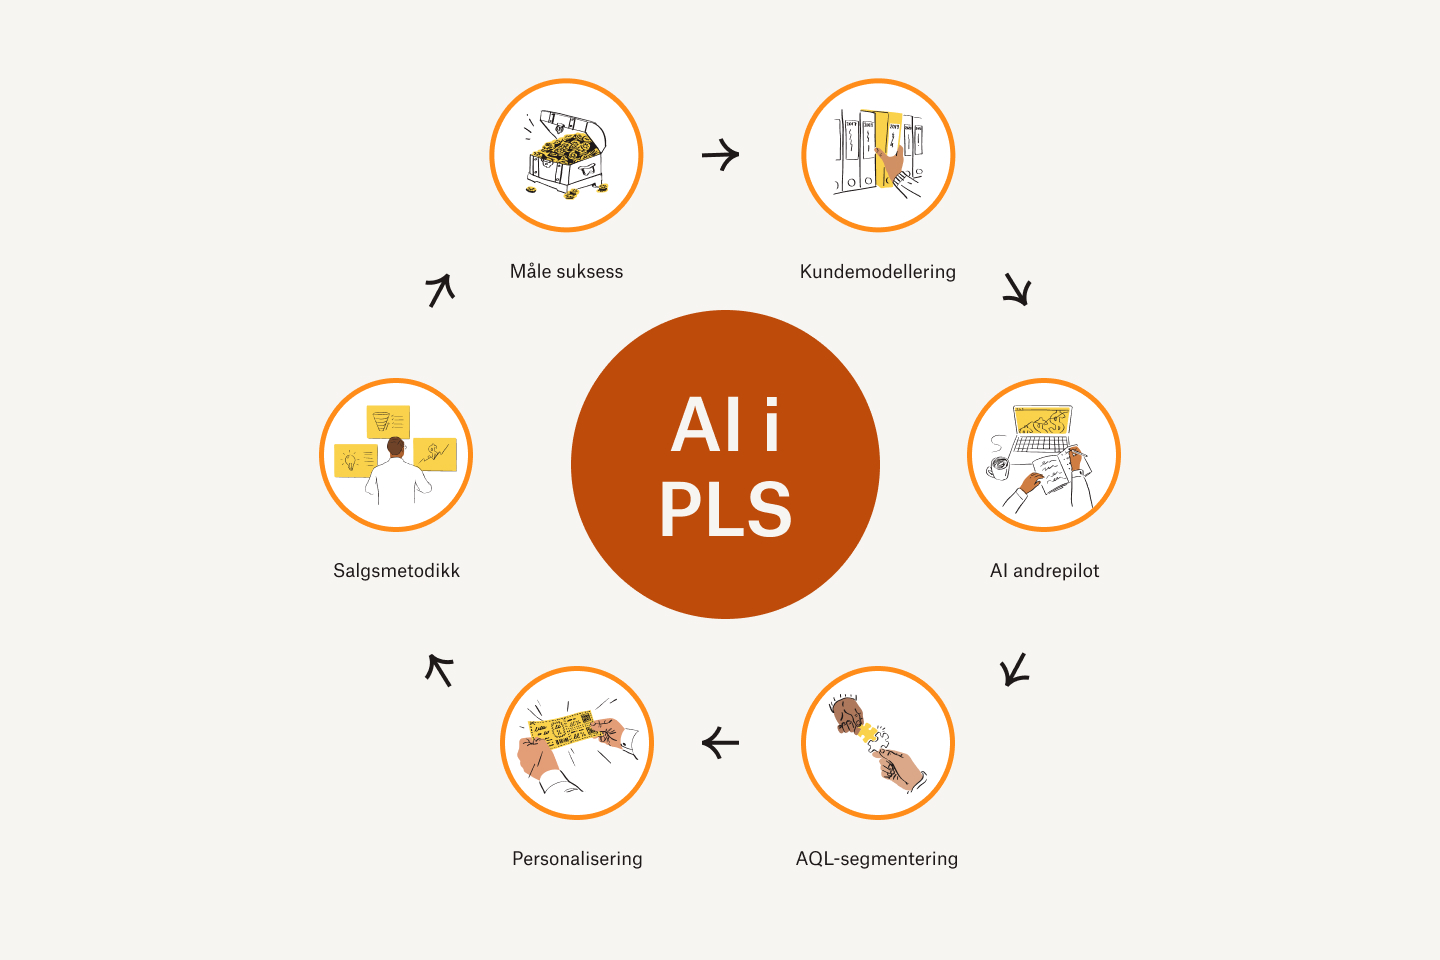 Kundemarkedsføringshjulet for AI i PLS som inkluderer måling av suksess, kundemodellering, AI ko-pilot, AQL-segmentering, personalisering, sosial metodikk og måling av suksess